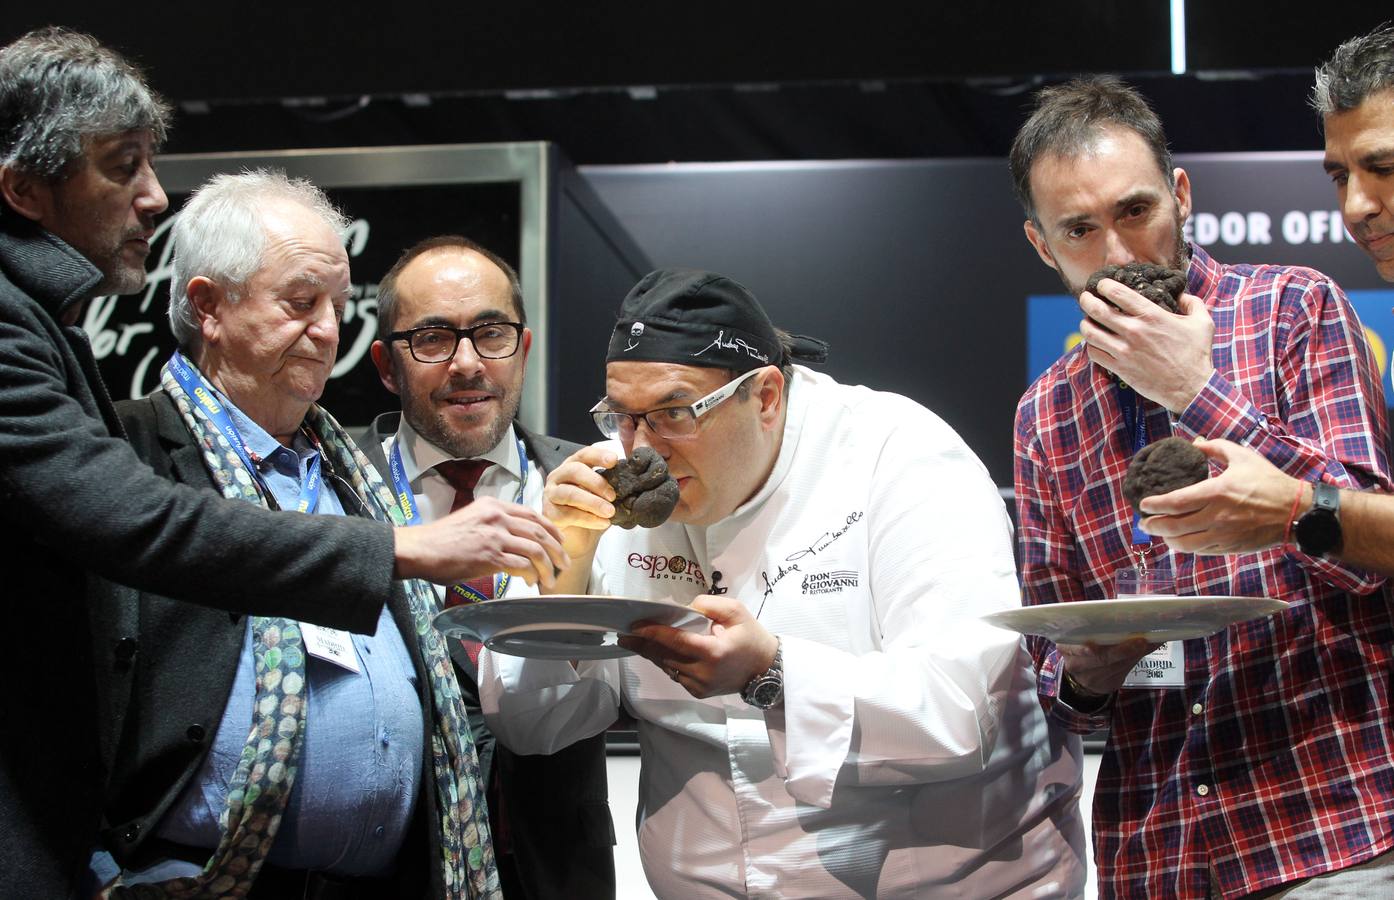 El presidente de la Diputación de Soria, Luis Rey (C) junto al chef Andrea Tubarello y dos de los miembros de la procuctora ATTIC Films que comparten los dos lotes subastados de la trufa negra de Soria, acompañados por los cocineros, Juan María Arzak y Paco Roncero.